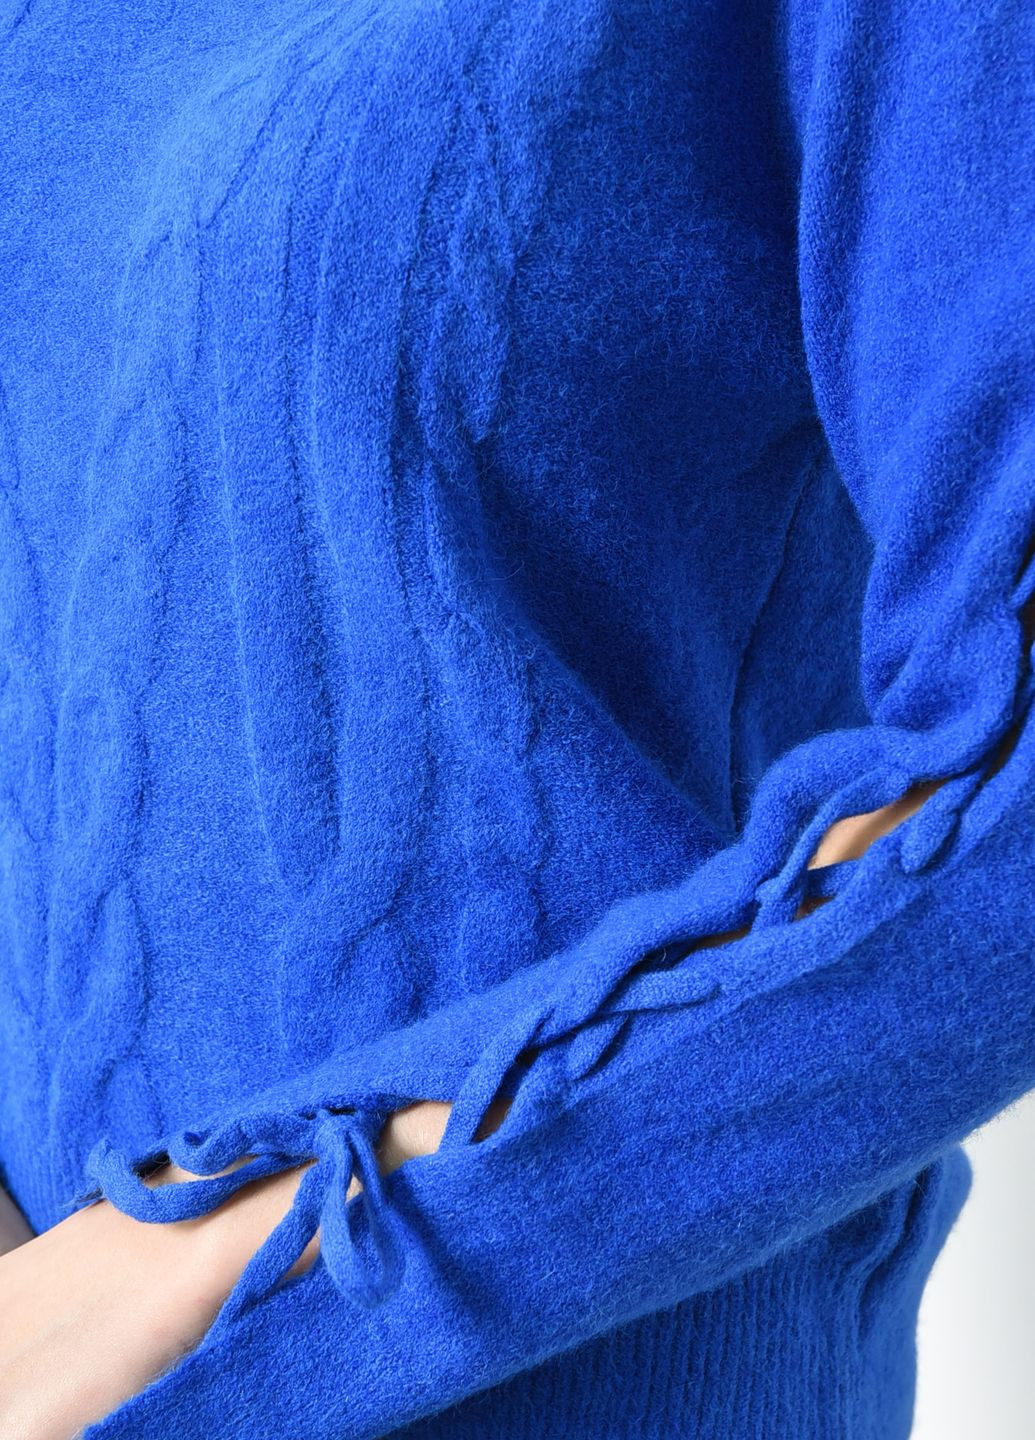 Синий зимний свитер женский ангора синего цвета пуловер Let's Shop